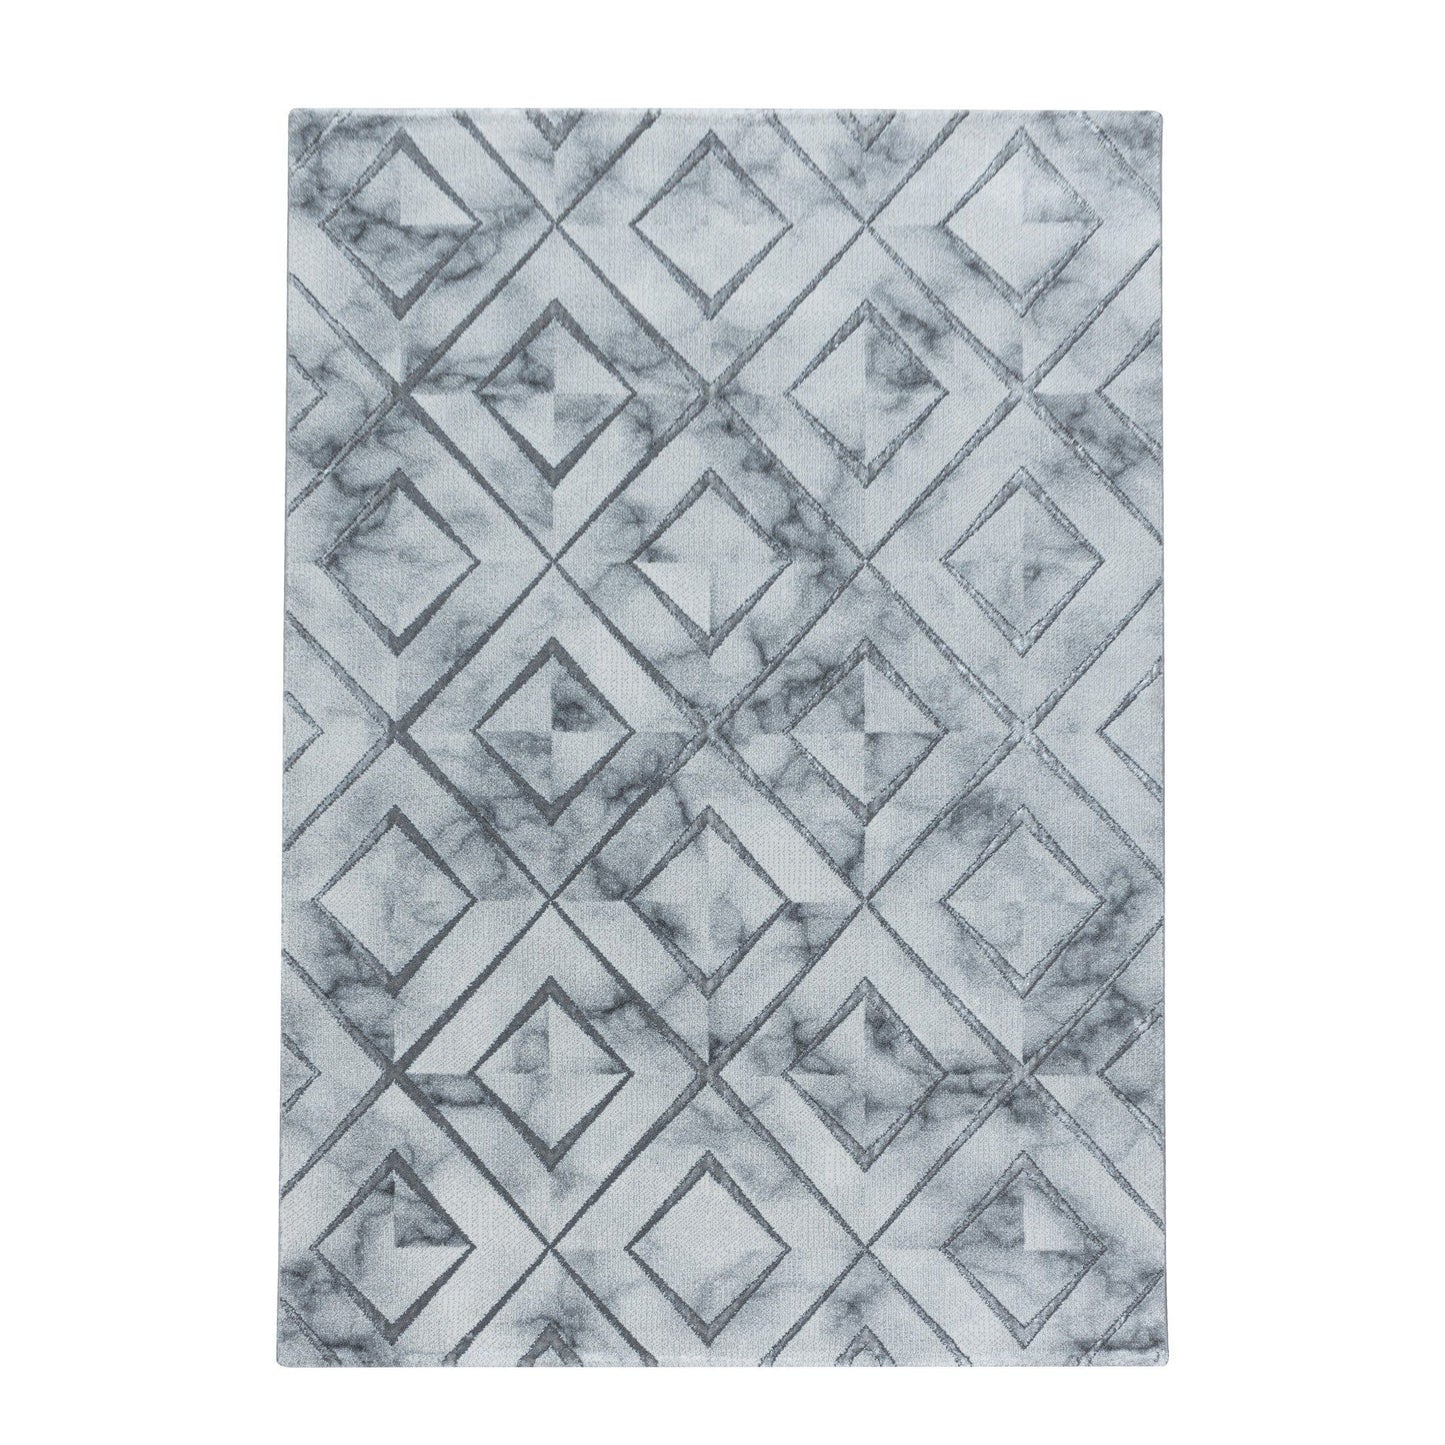 NAXOS3811SØLV Tæppe (140 x 200) - Sølv Hvid Grå